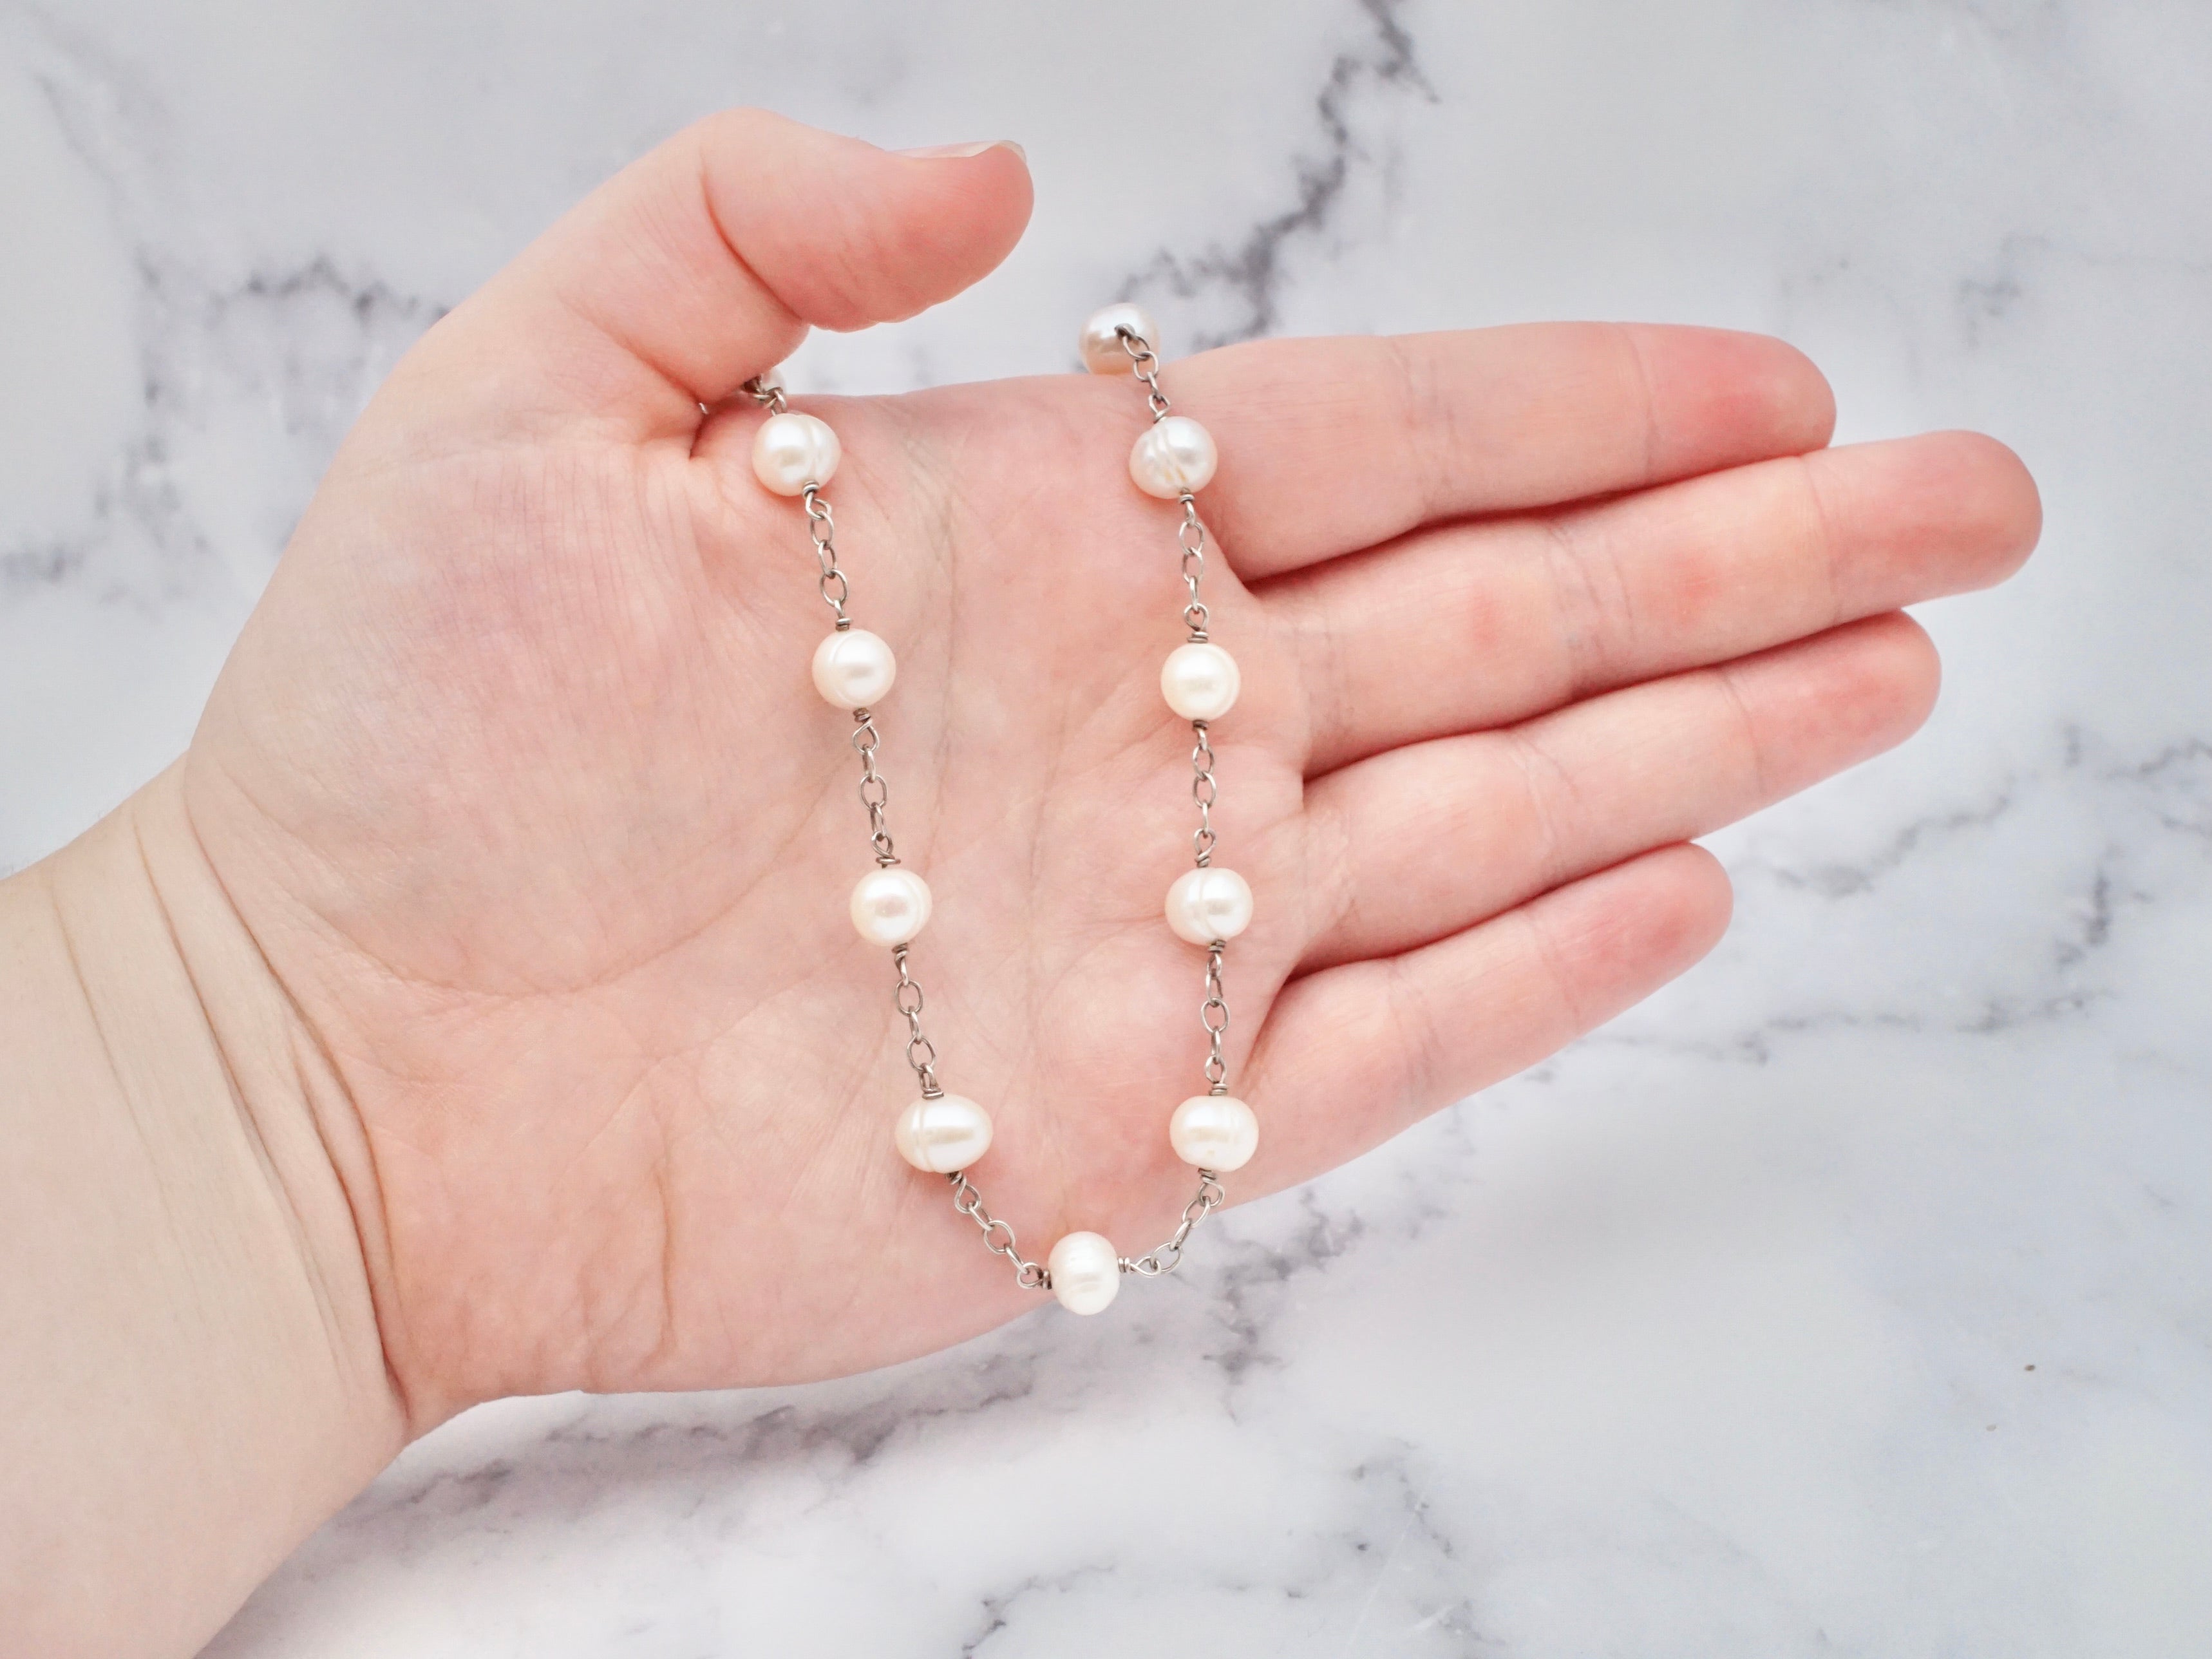 Vintage sterling cultured pearl station necklace, 16